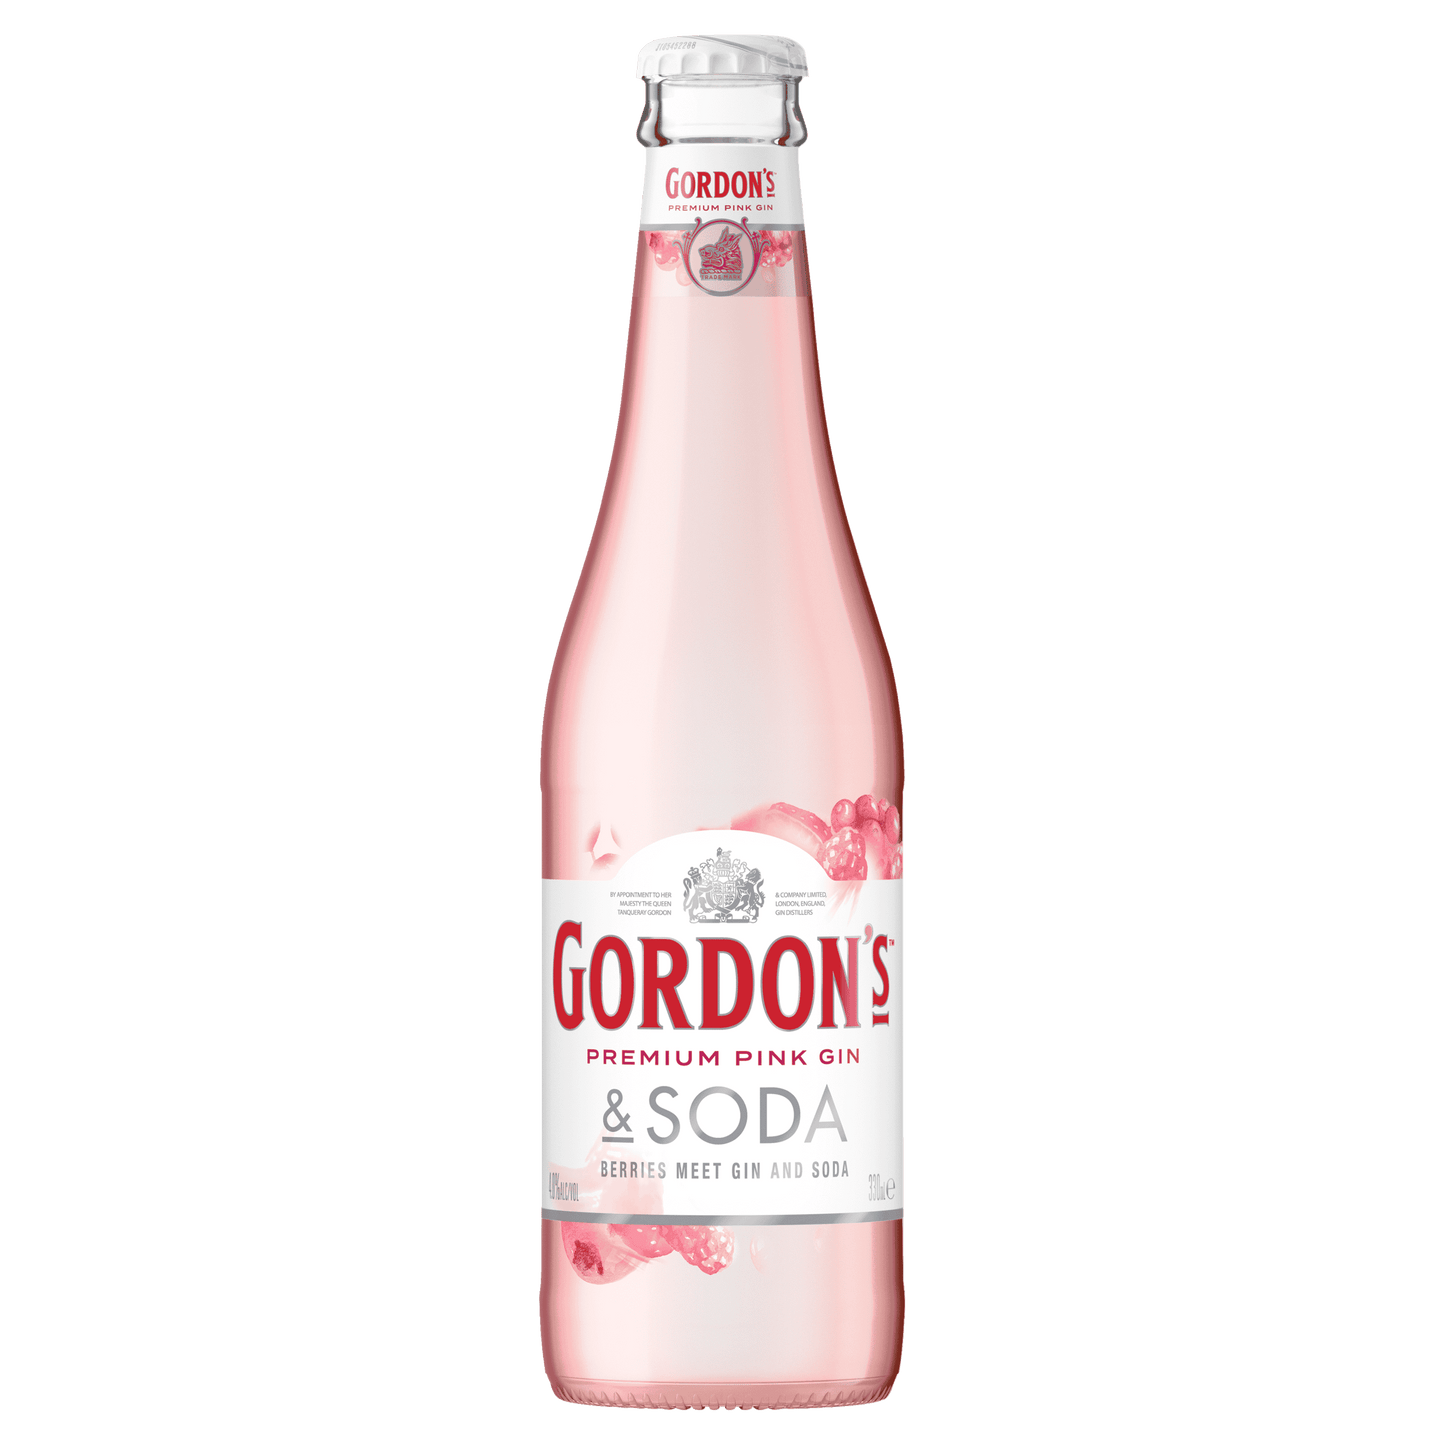 Gordon's Pink Gin & Soda